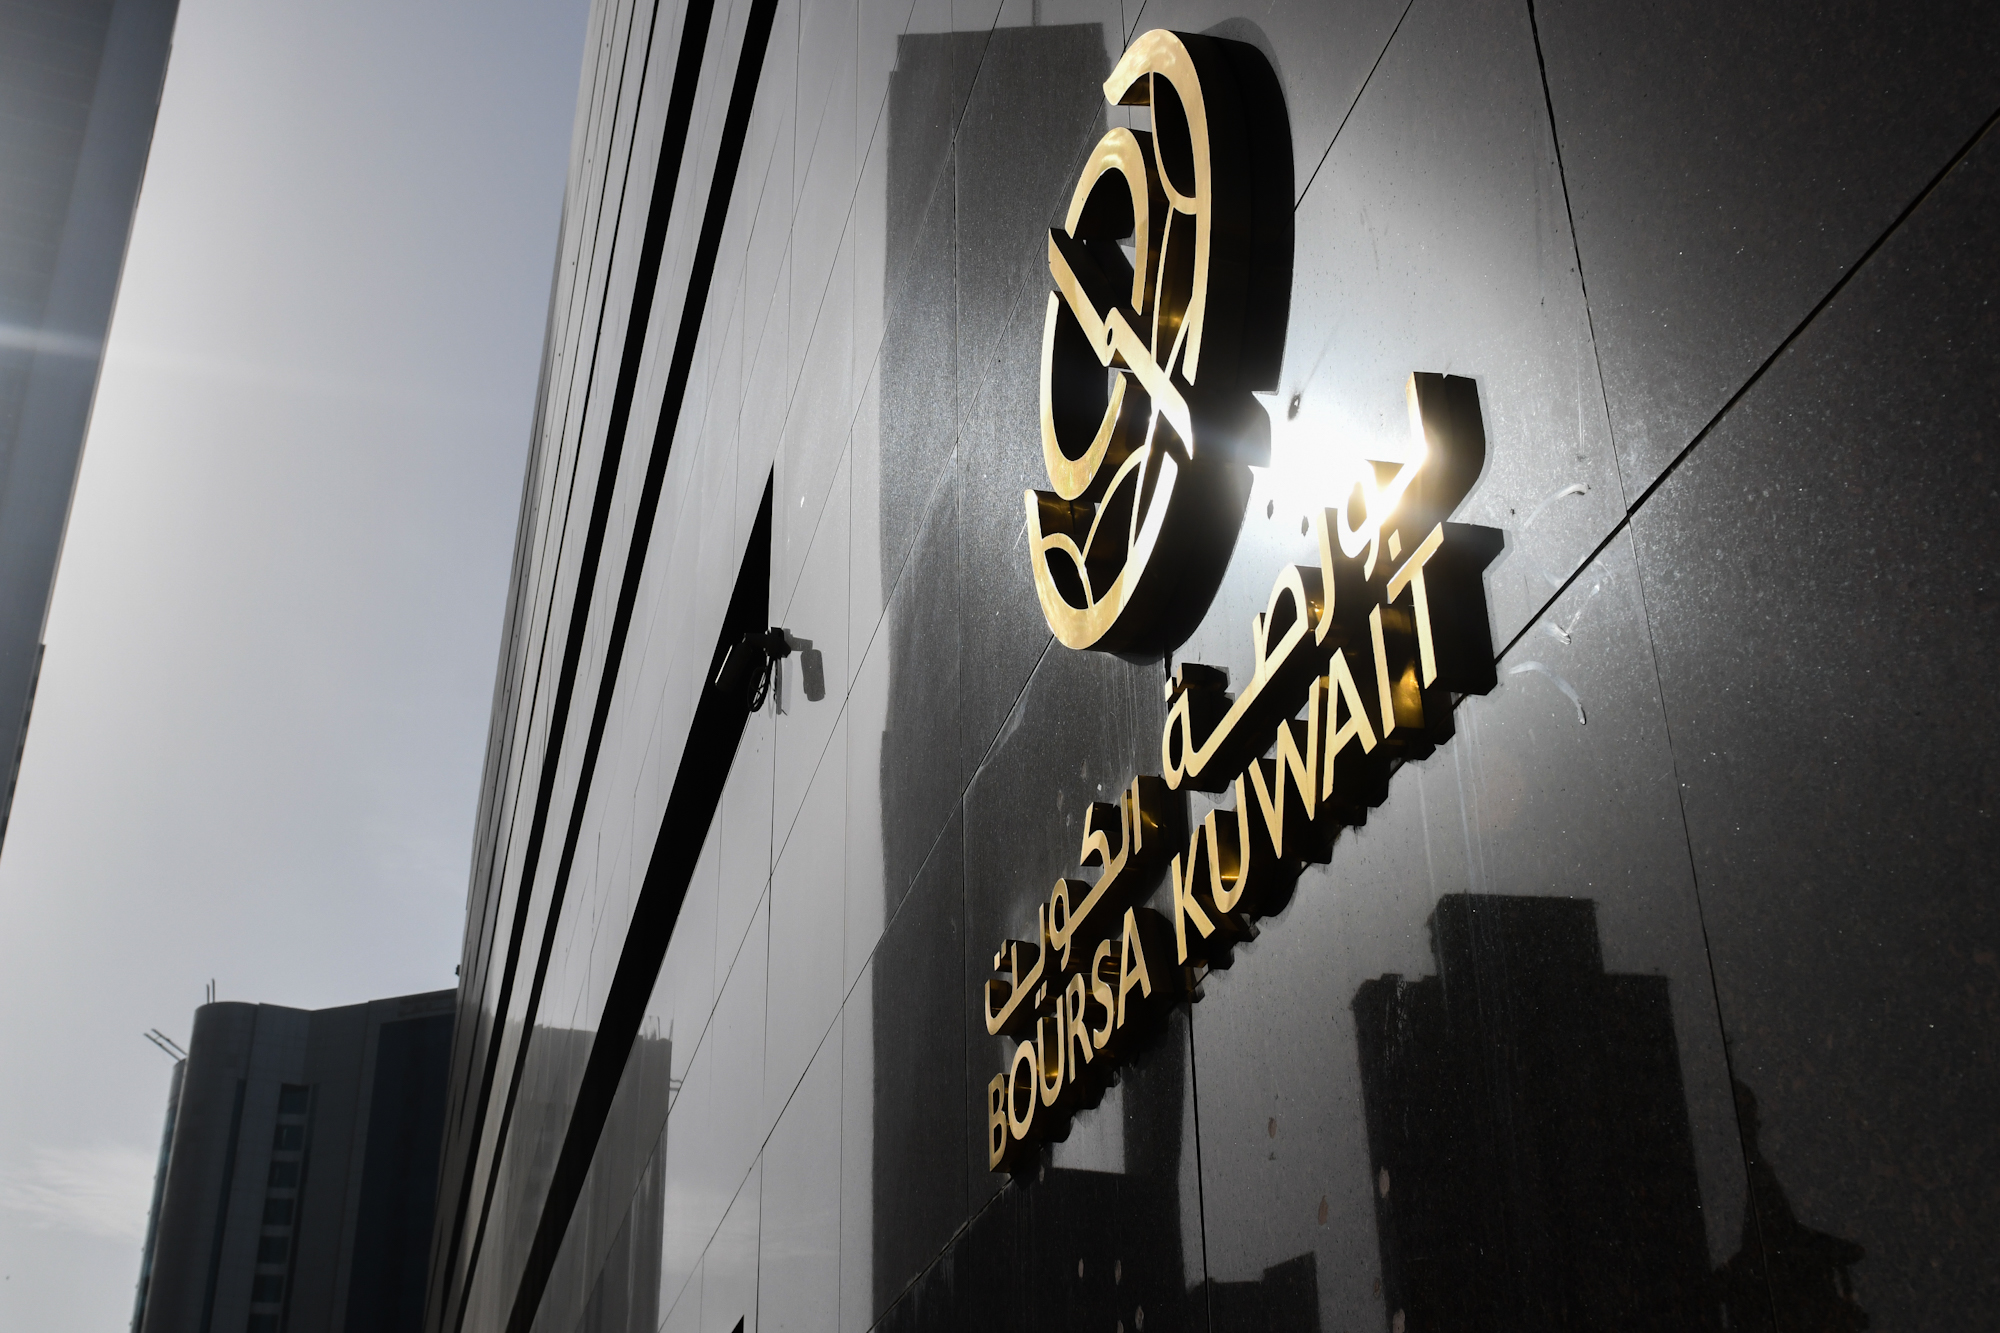 بورصة الكويت تغلق تعاملاتها على ارتفاع مؤشرها العام 4ر30 نقطة ليبلغ 83ر7286 بنسبة 42ر0 في المئة